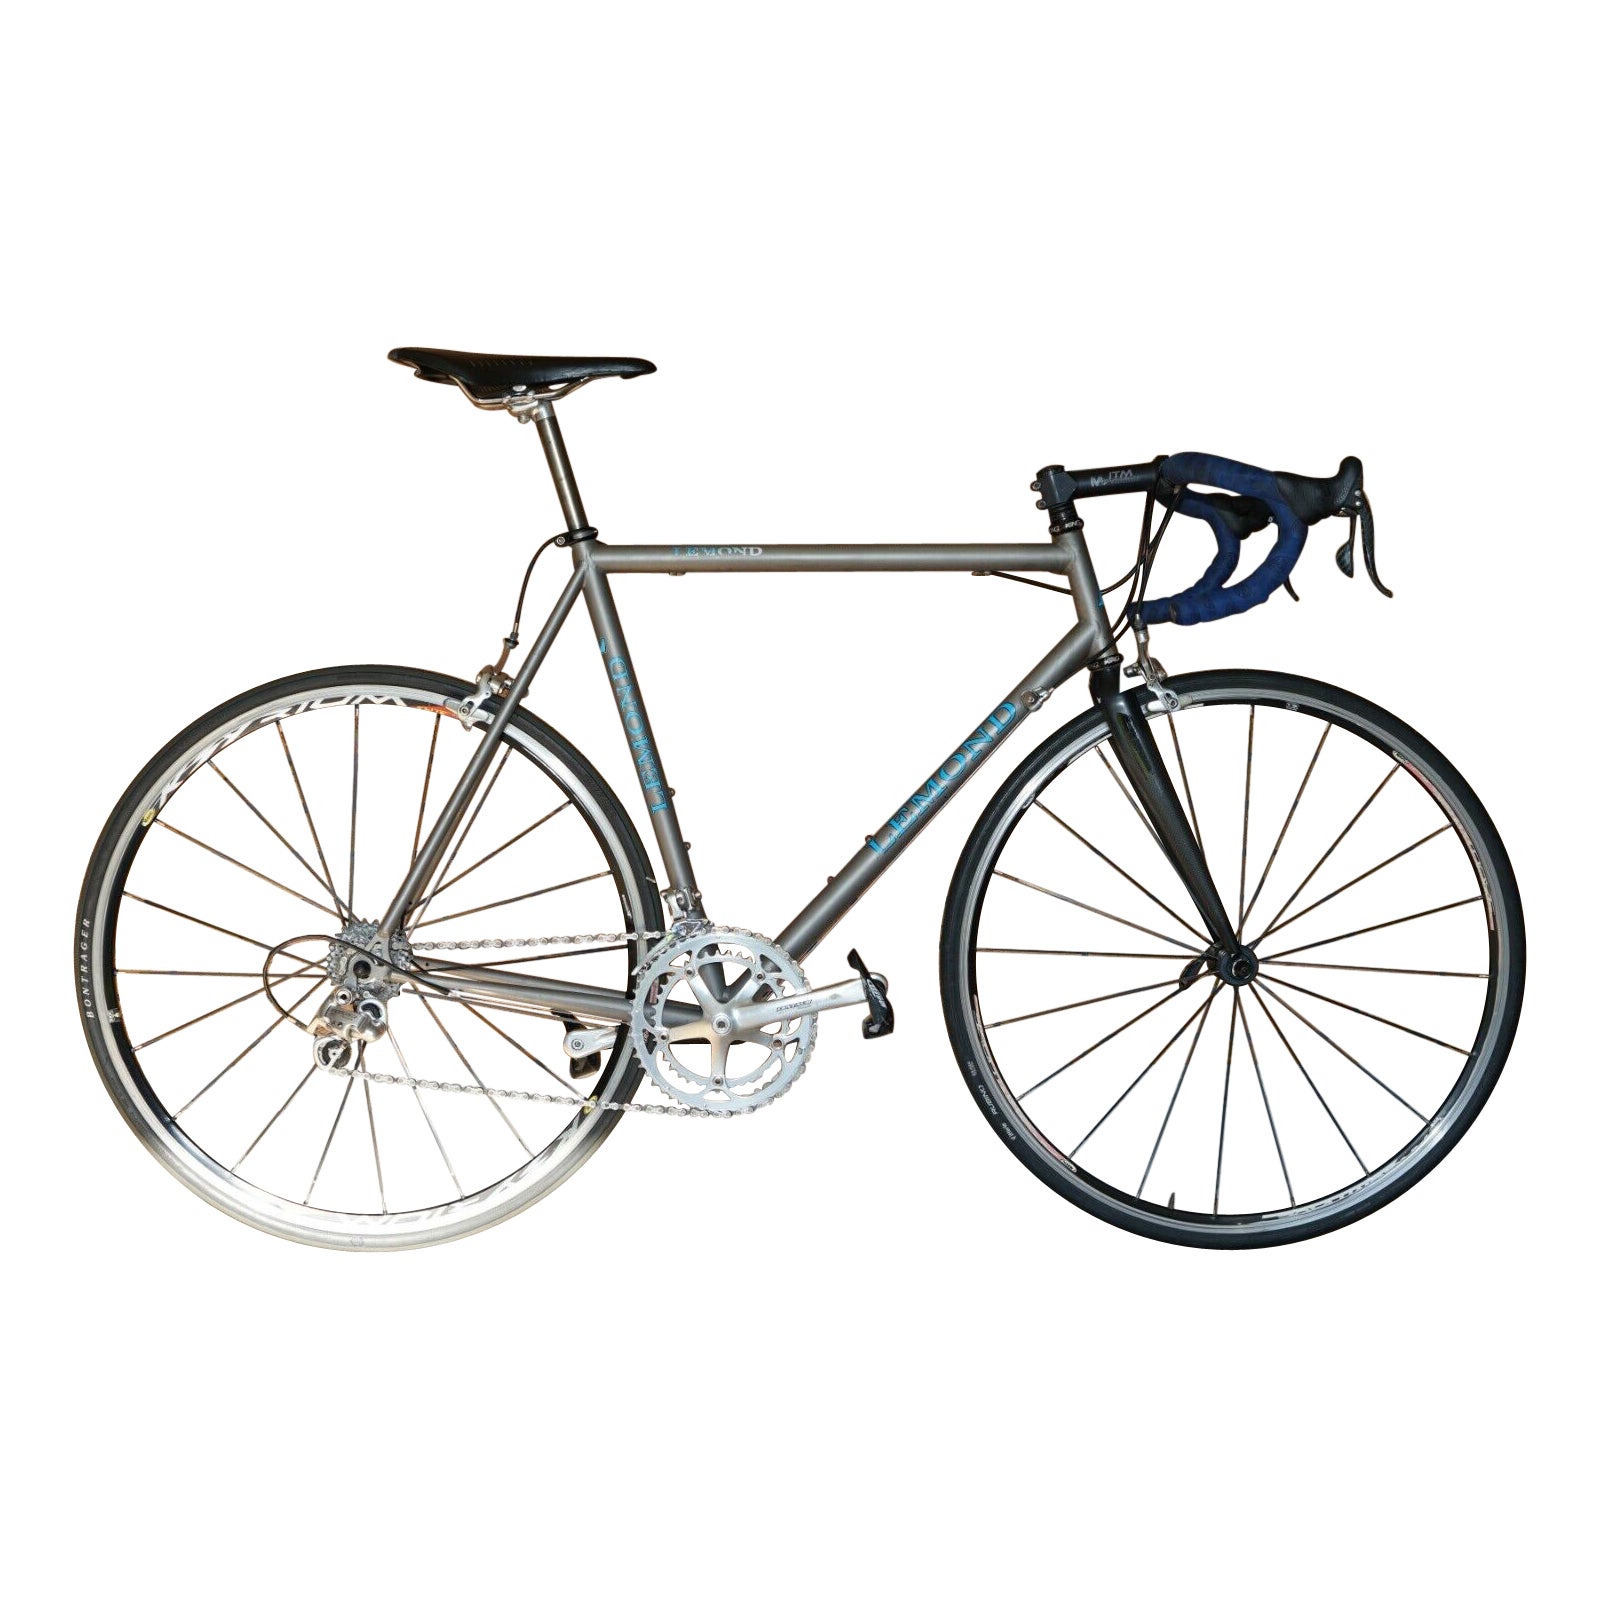 Lemond 3AL 2.5V Titanium Road Bike Campagnolo Groupset Chris King Headset For Sale